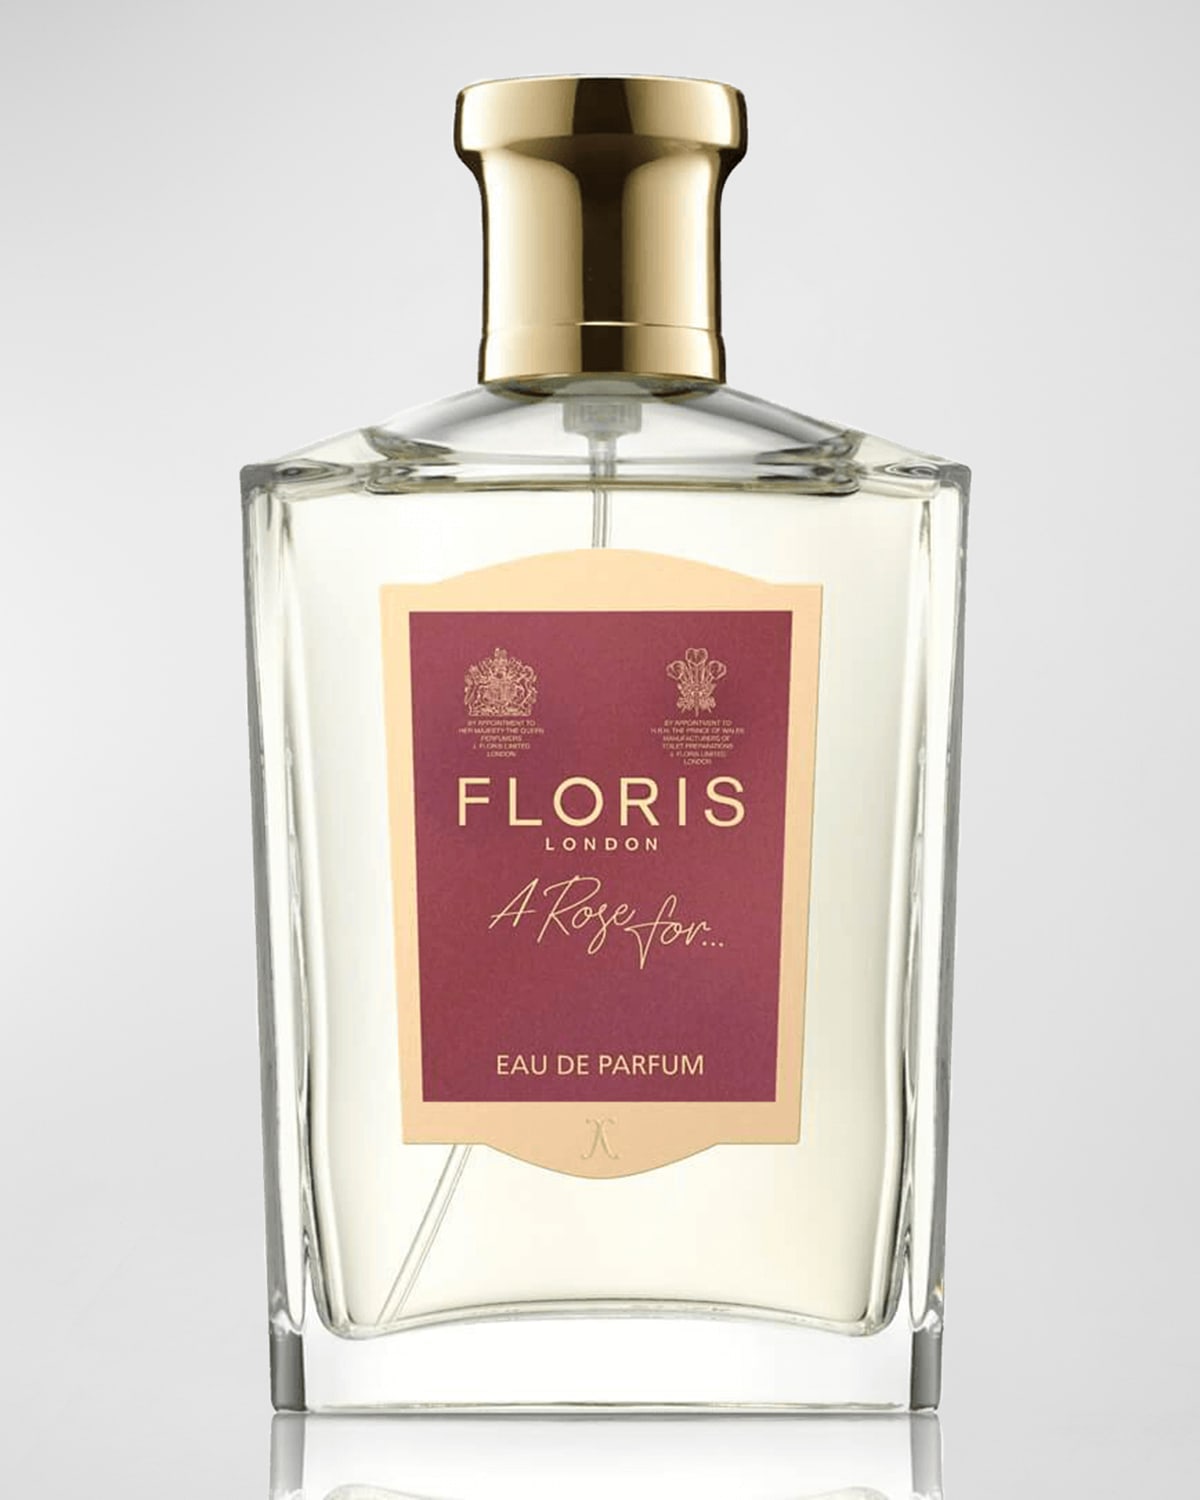 Floris London A Rose For.Eau de Parfum, 3.4 oz.